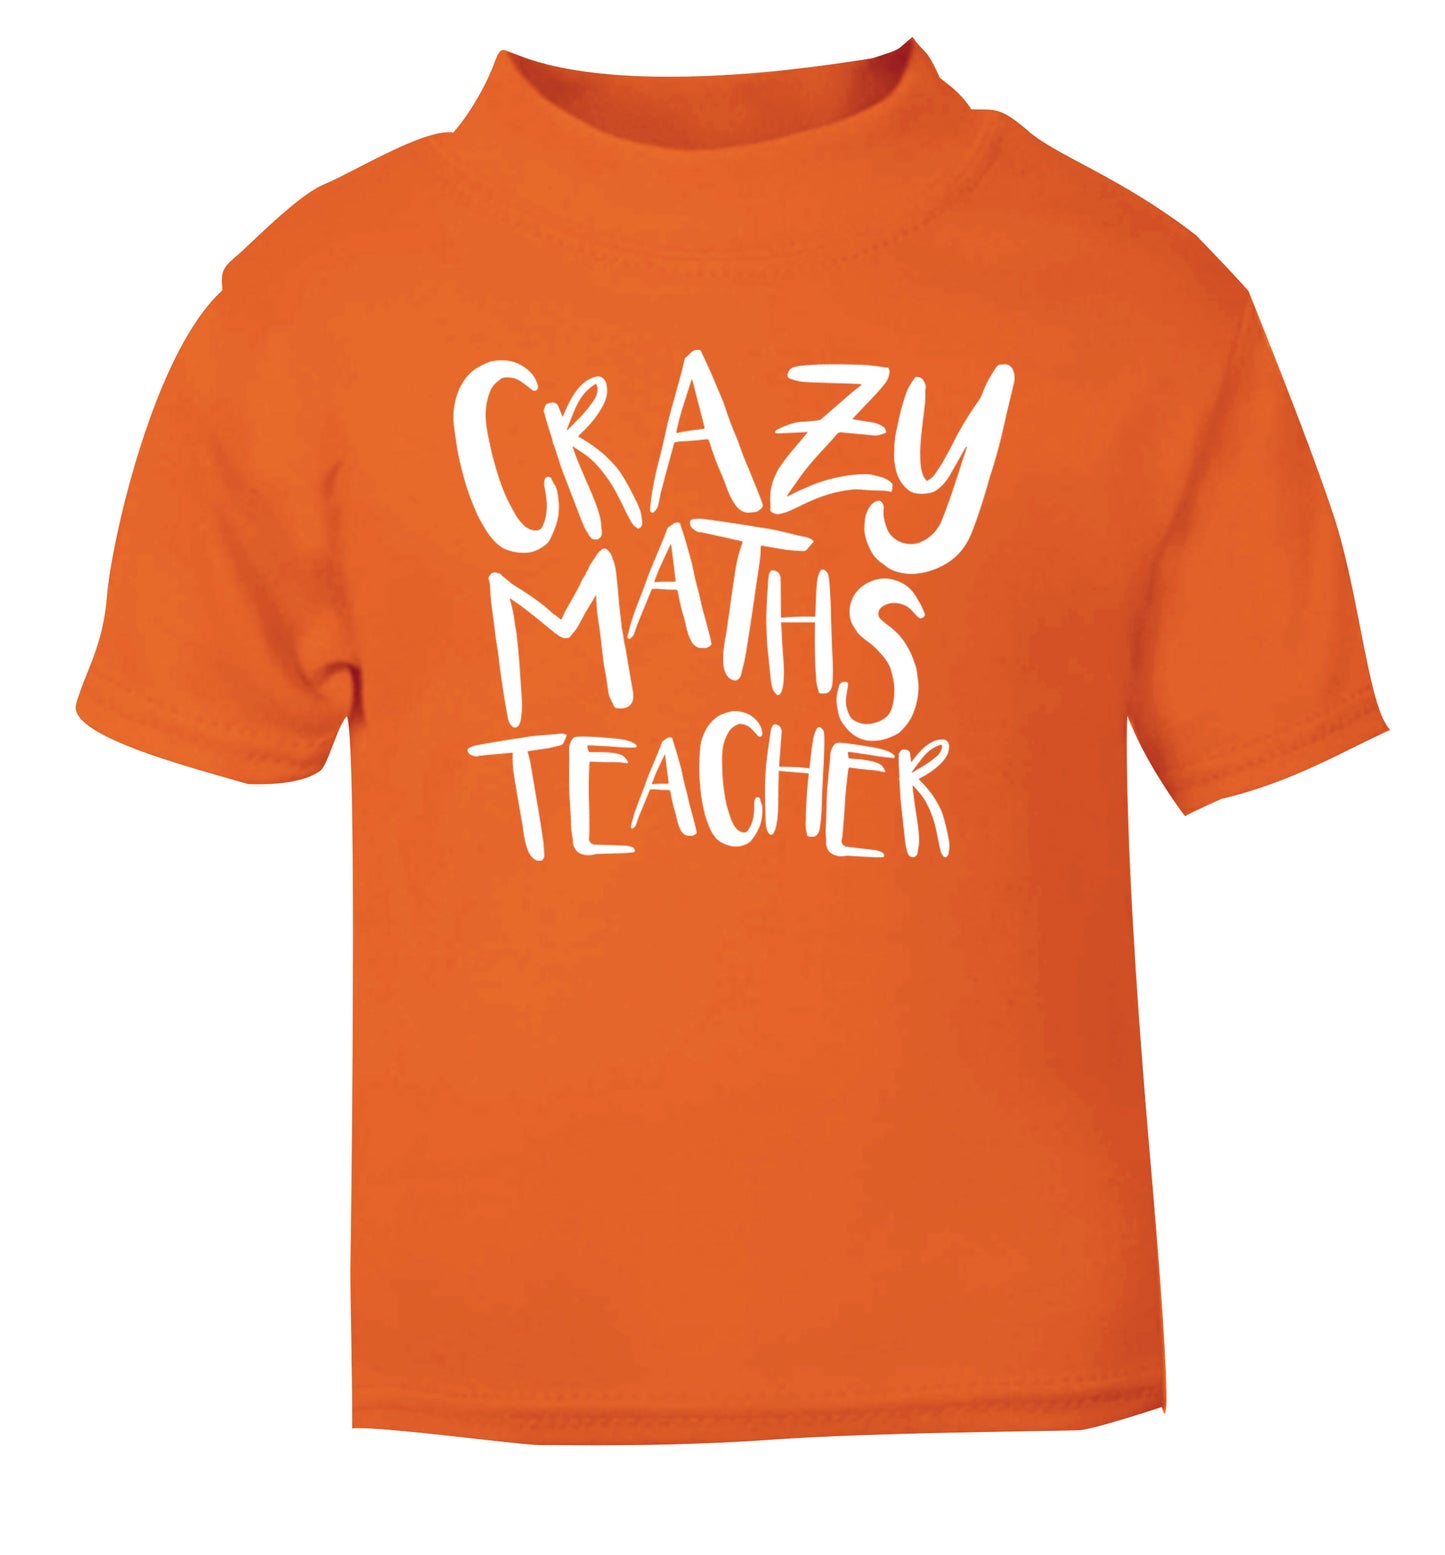 Crazy maths teacher orange Baby Toddler Tshirt 2 Years